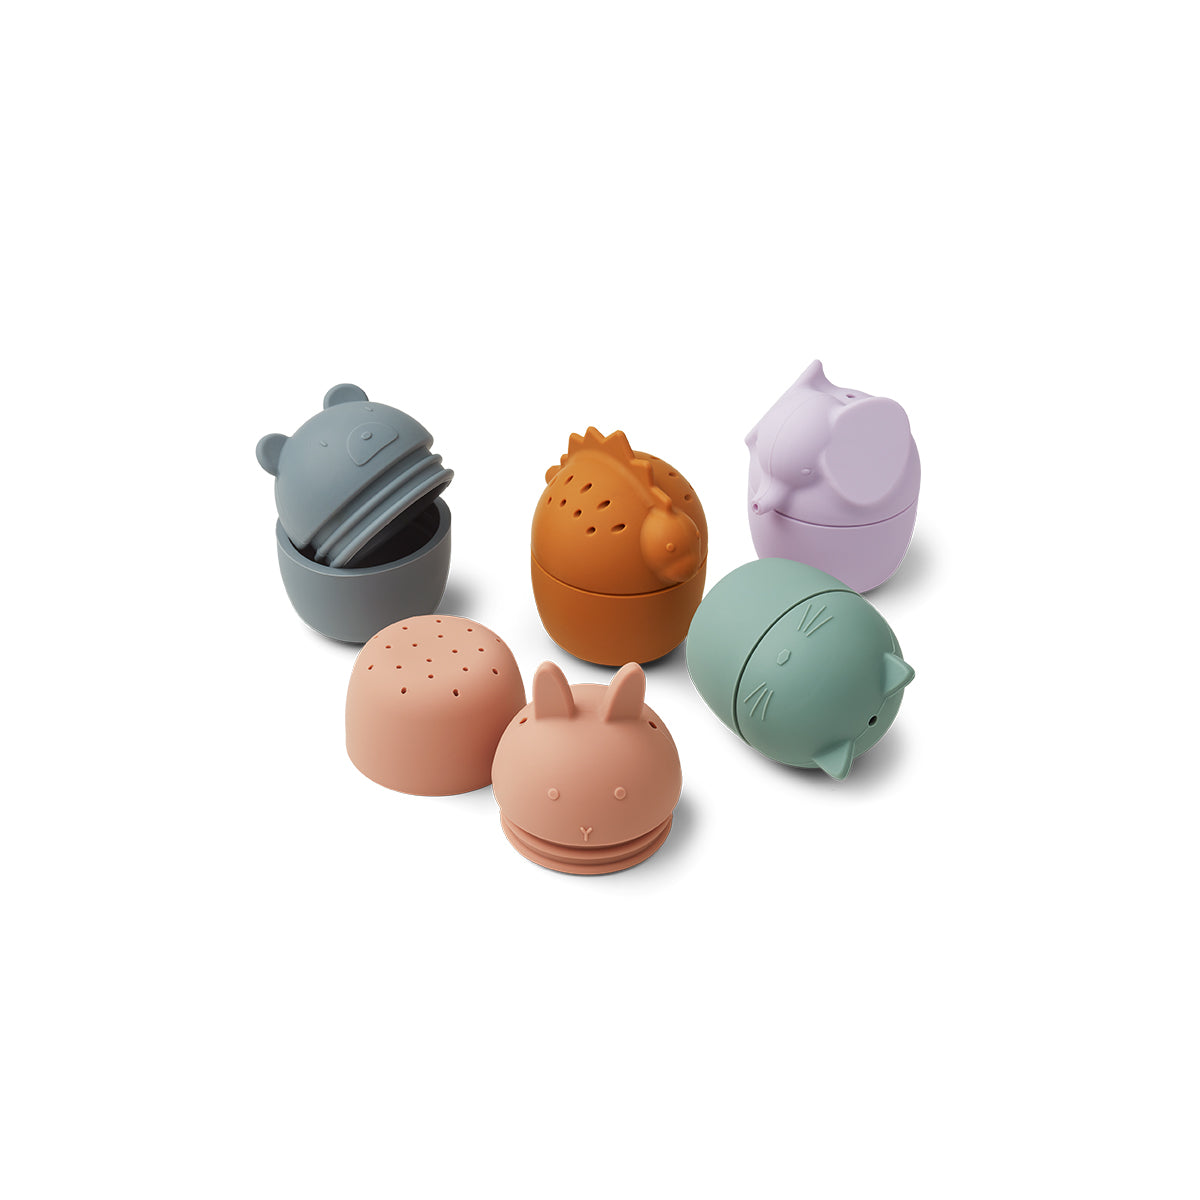 De badspeeltjes gaby 5-pack in de kleur multi van Liewood zijn ideaal voor in badje. De gekleurde diertjes zijn makkelijk vast te pakken, in te knijpen en uit elkaar te halen. Heerlijk speelgoed voor in bad! Het badspeelgoed is gemaakt van siliconen. VanZus